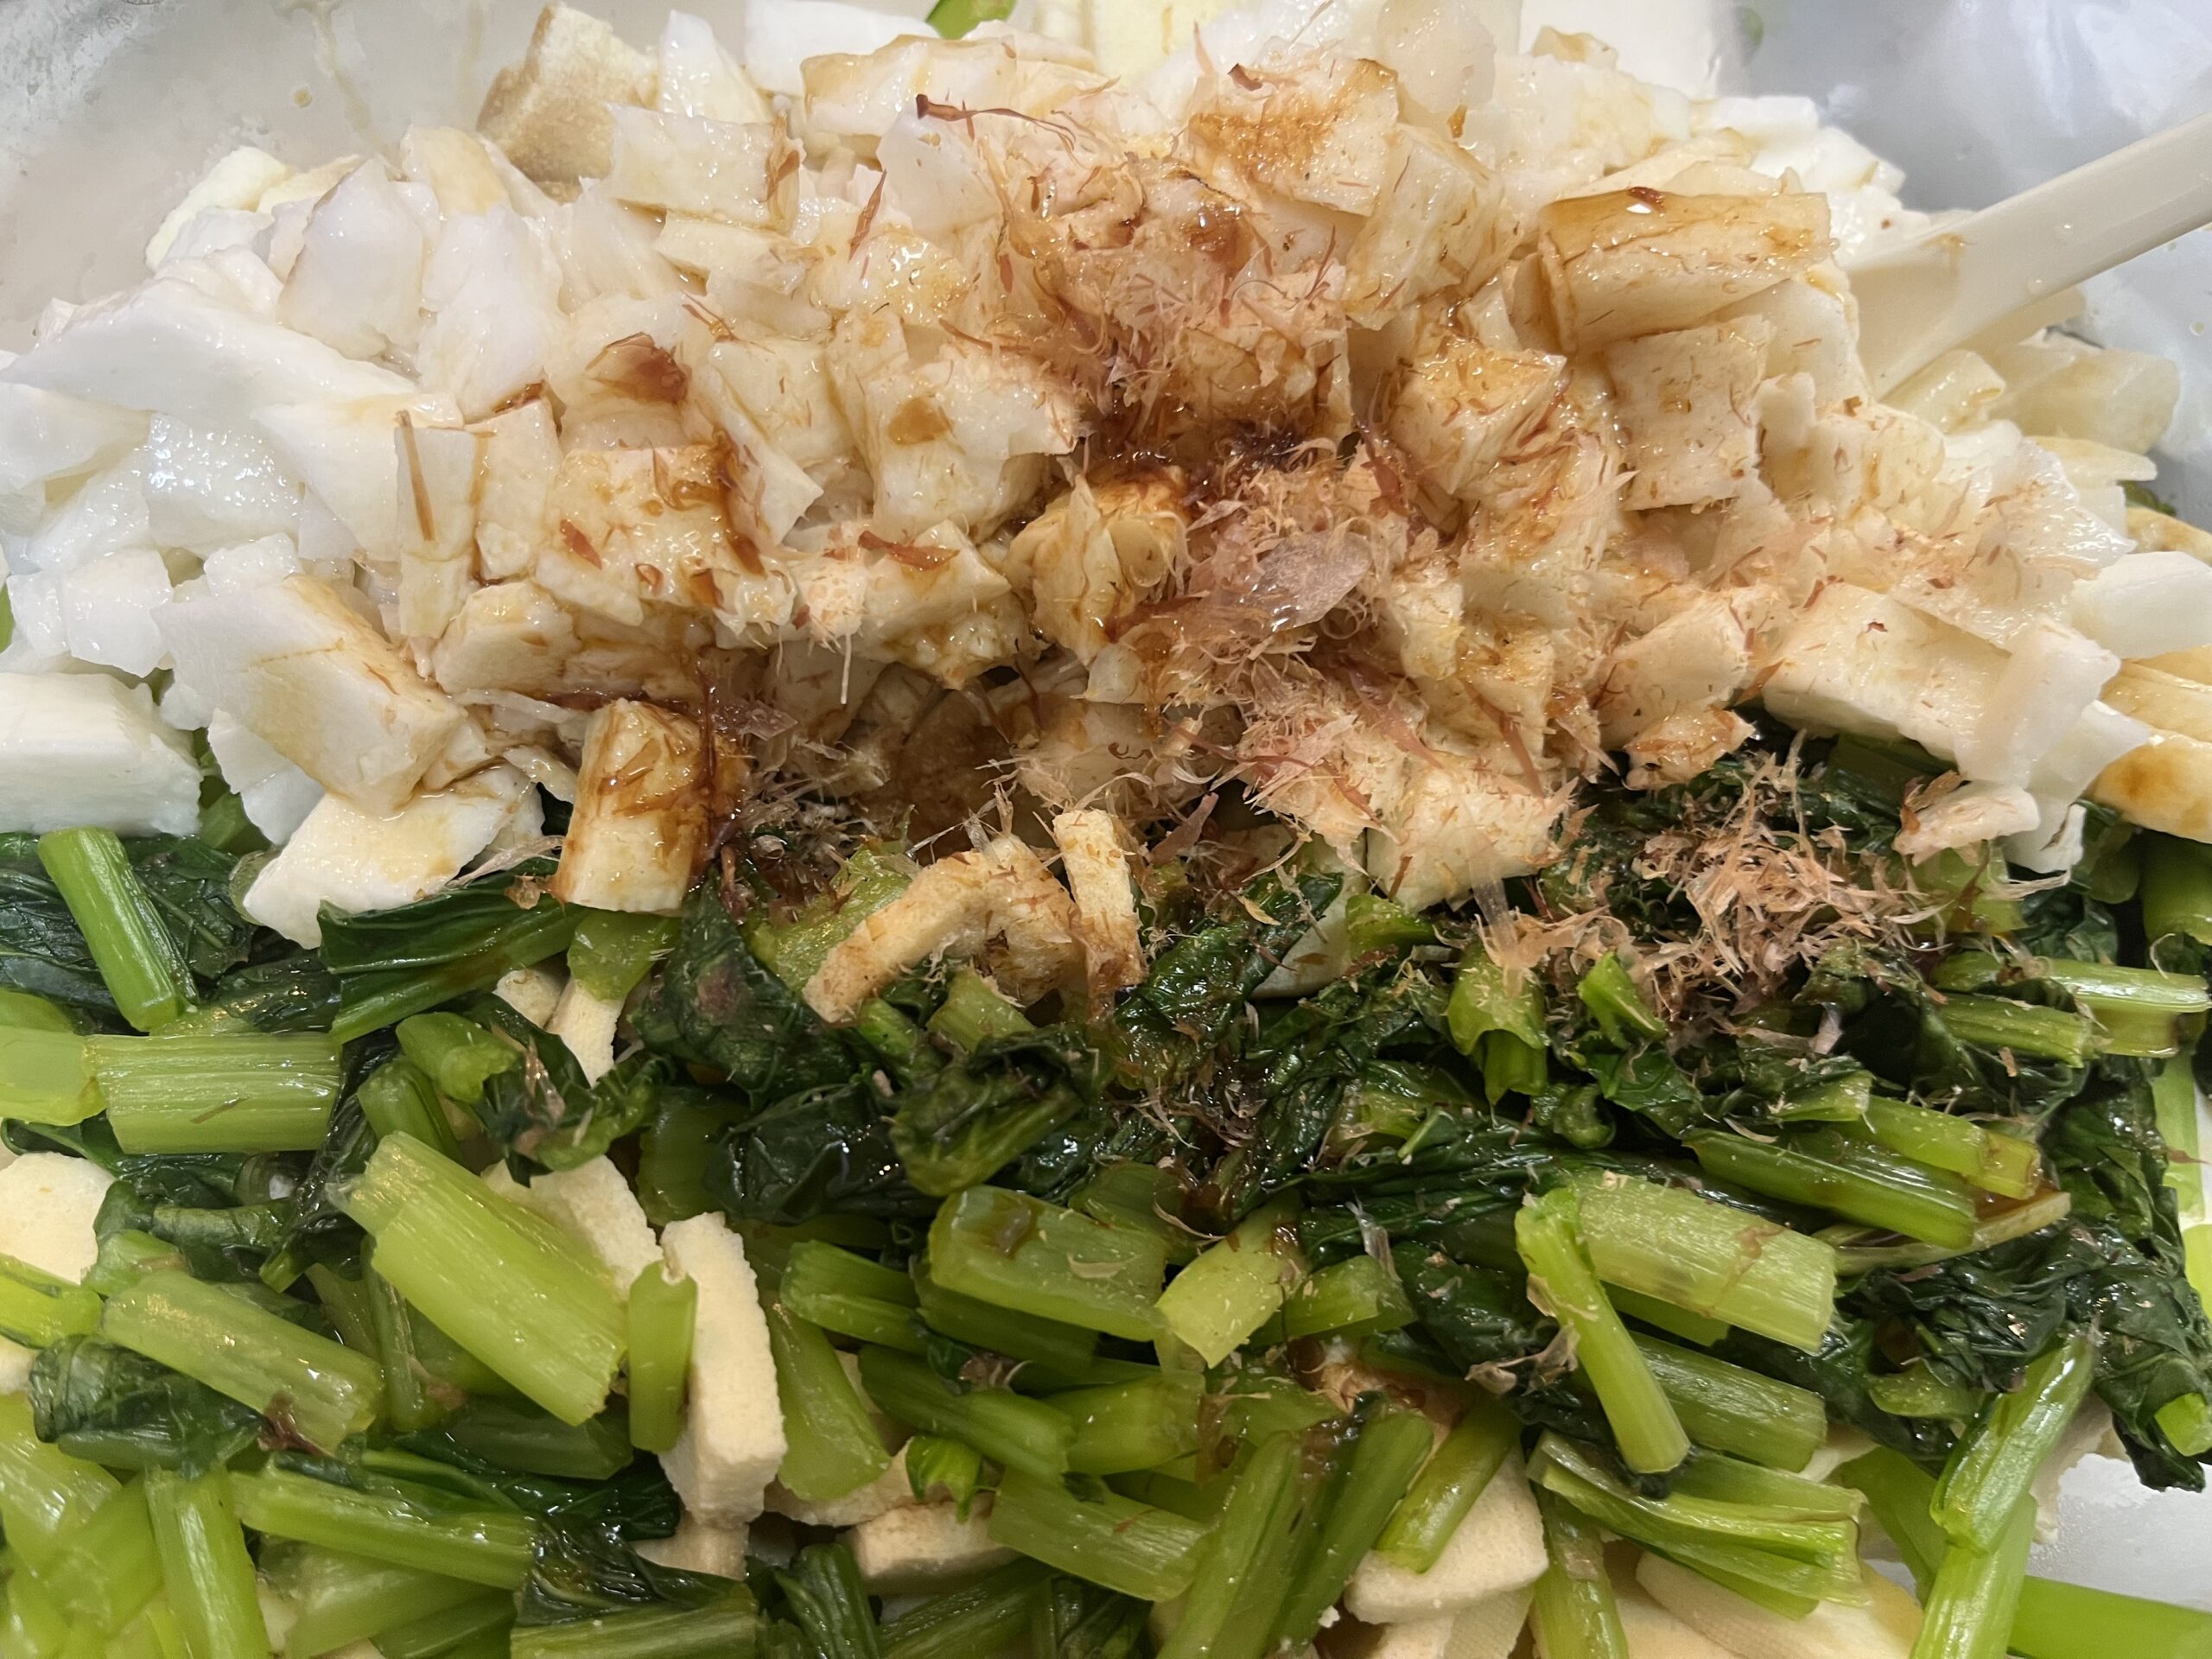 小松菜、長芋、高野豆腐に残りの鰹節、醬油、麵つゆを和えたところを撮影した写真